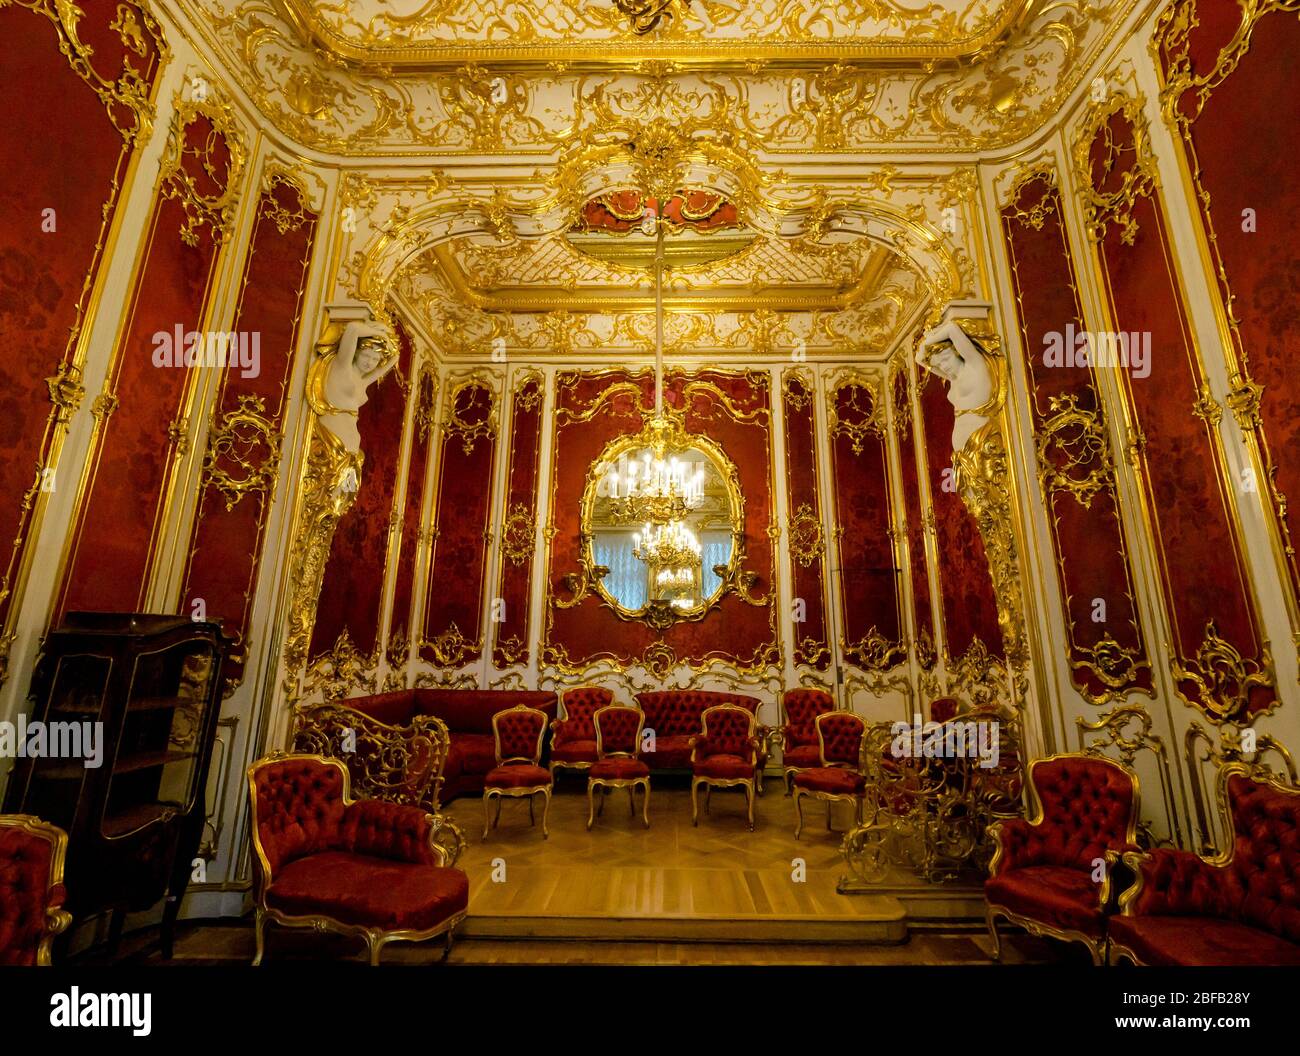 Décoration rouge riche dans le Boudoir dans les appartements de l'impératrice Maria Alexandrovna, Musée d'État de l'Hermitage, Saint-Pétersbourg, Russie Banque D'Images